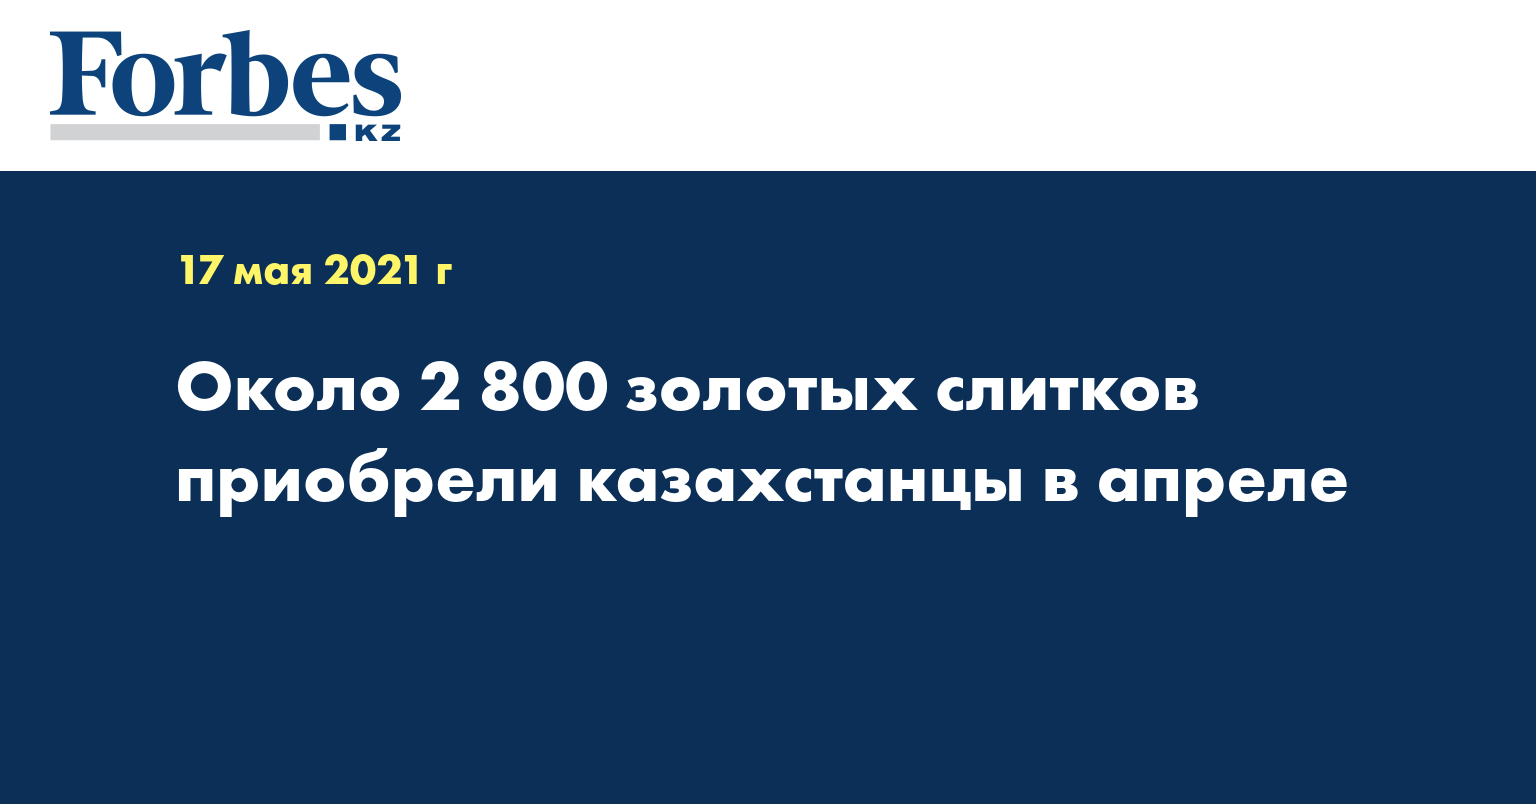  Около 2 800 золотых слитков приобрели казахстанцы в апреле